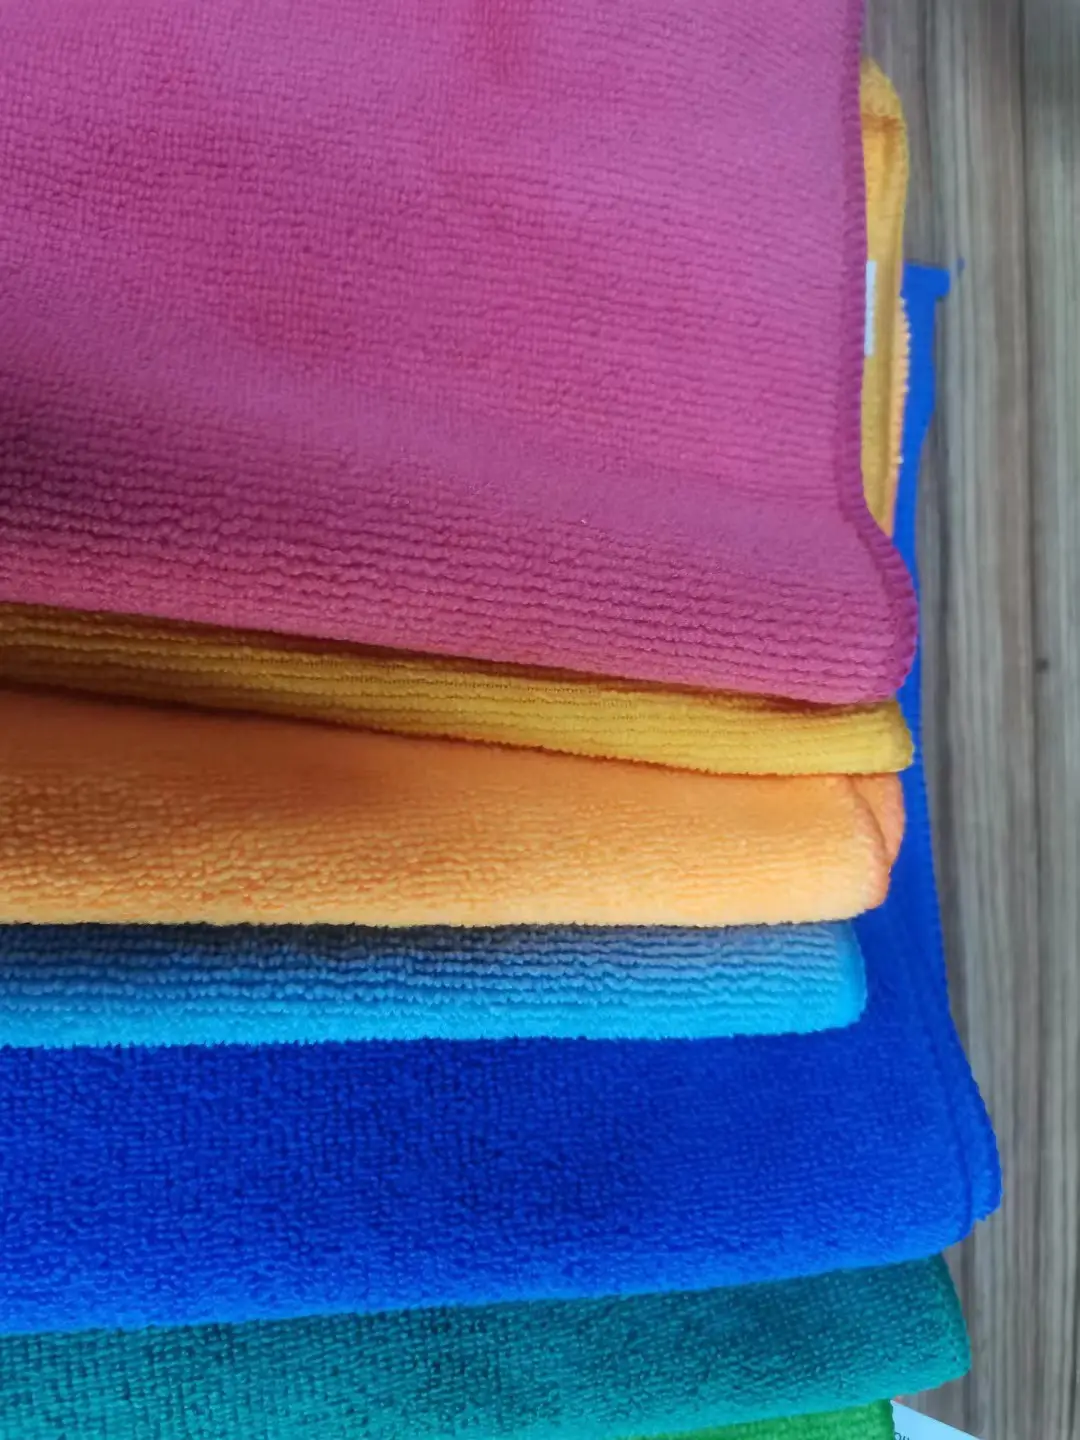 नीला पीला ग्रे सफेद अनुकूलित माइक्रोफाइबर सफाई कपड़ा 40*40 सेमी 36 टुकड़े एक पैक में बुनाई रसोई तौलिया